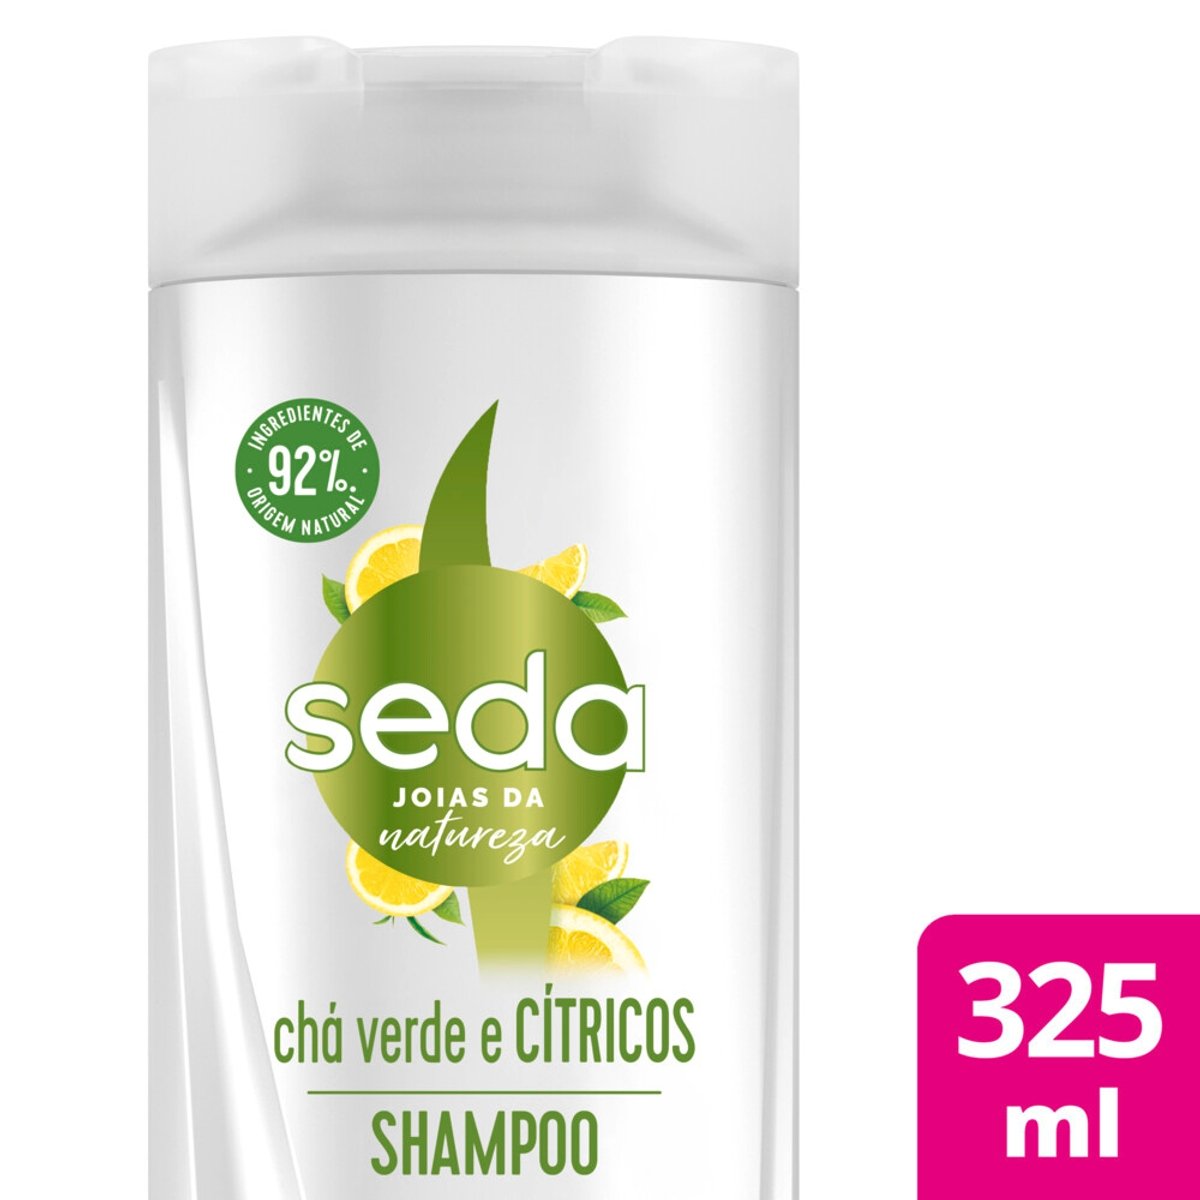 Shampoo PHYTOERVAS de Bétula Natural Antiqueda 250ml